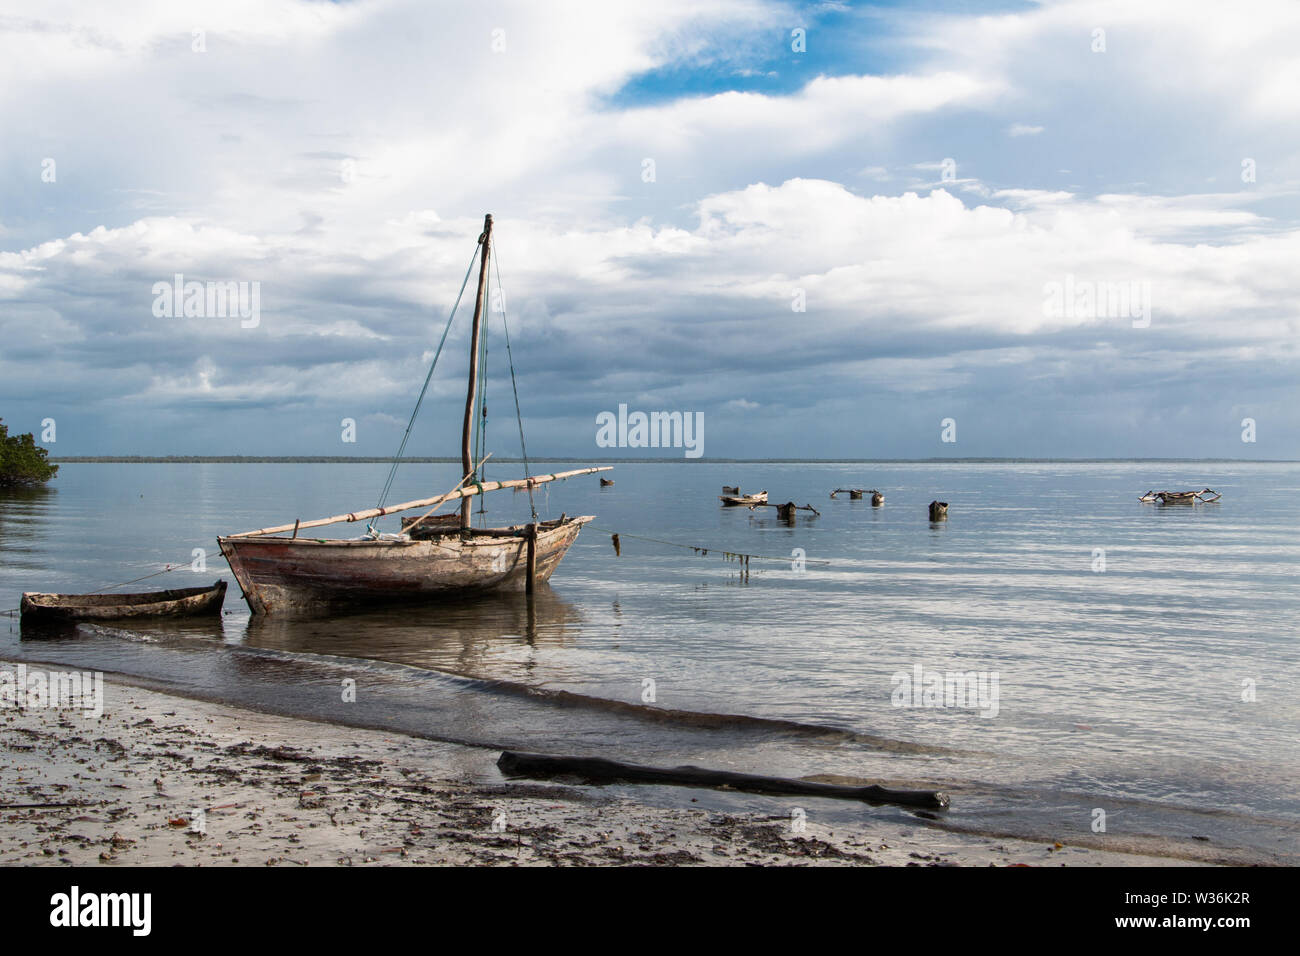 Les petits voiliers en bois, sur l'eau à la plage au lever du soleil à l'île de Mafia, la Tanzanie, avec ciel nuageux et calme avec de l'eau entourant les pirogues. Banque D'Images